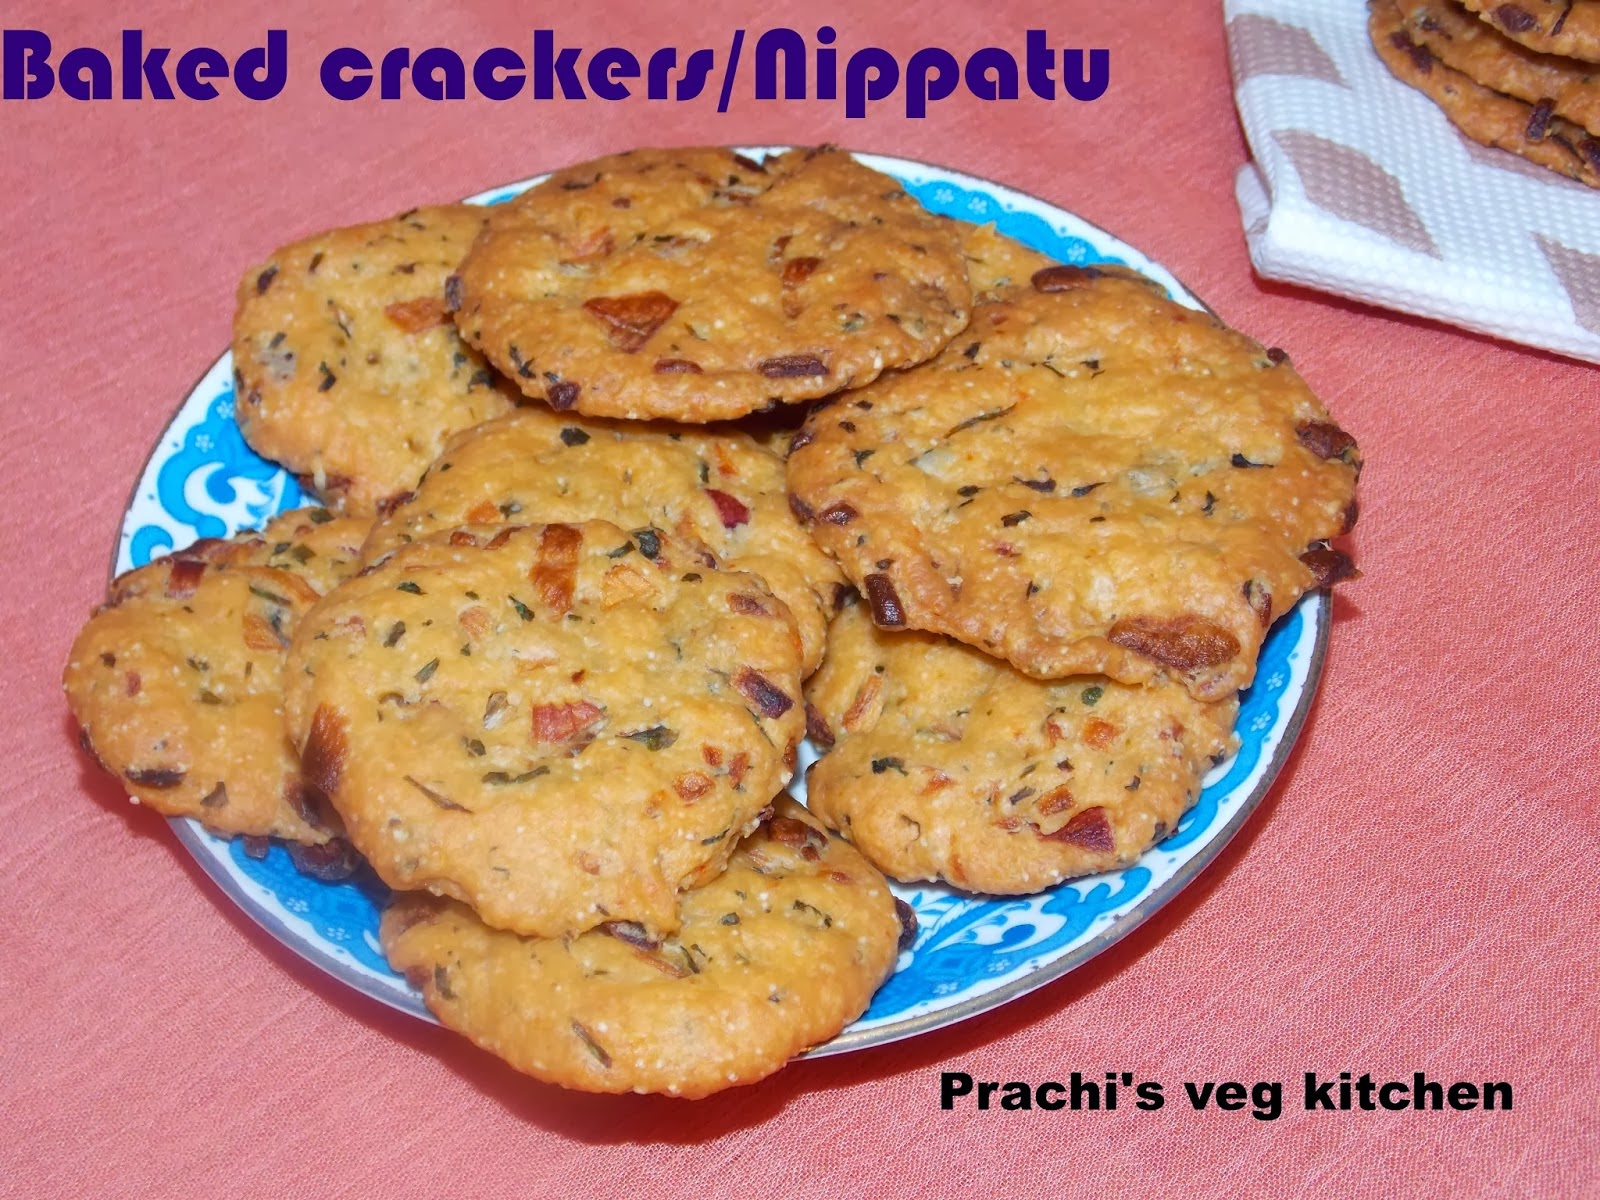 http://prachisvegkitchen.blogspot.in/2014/02/baked-cracker-nippatu.html#more